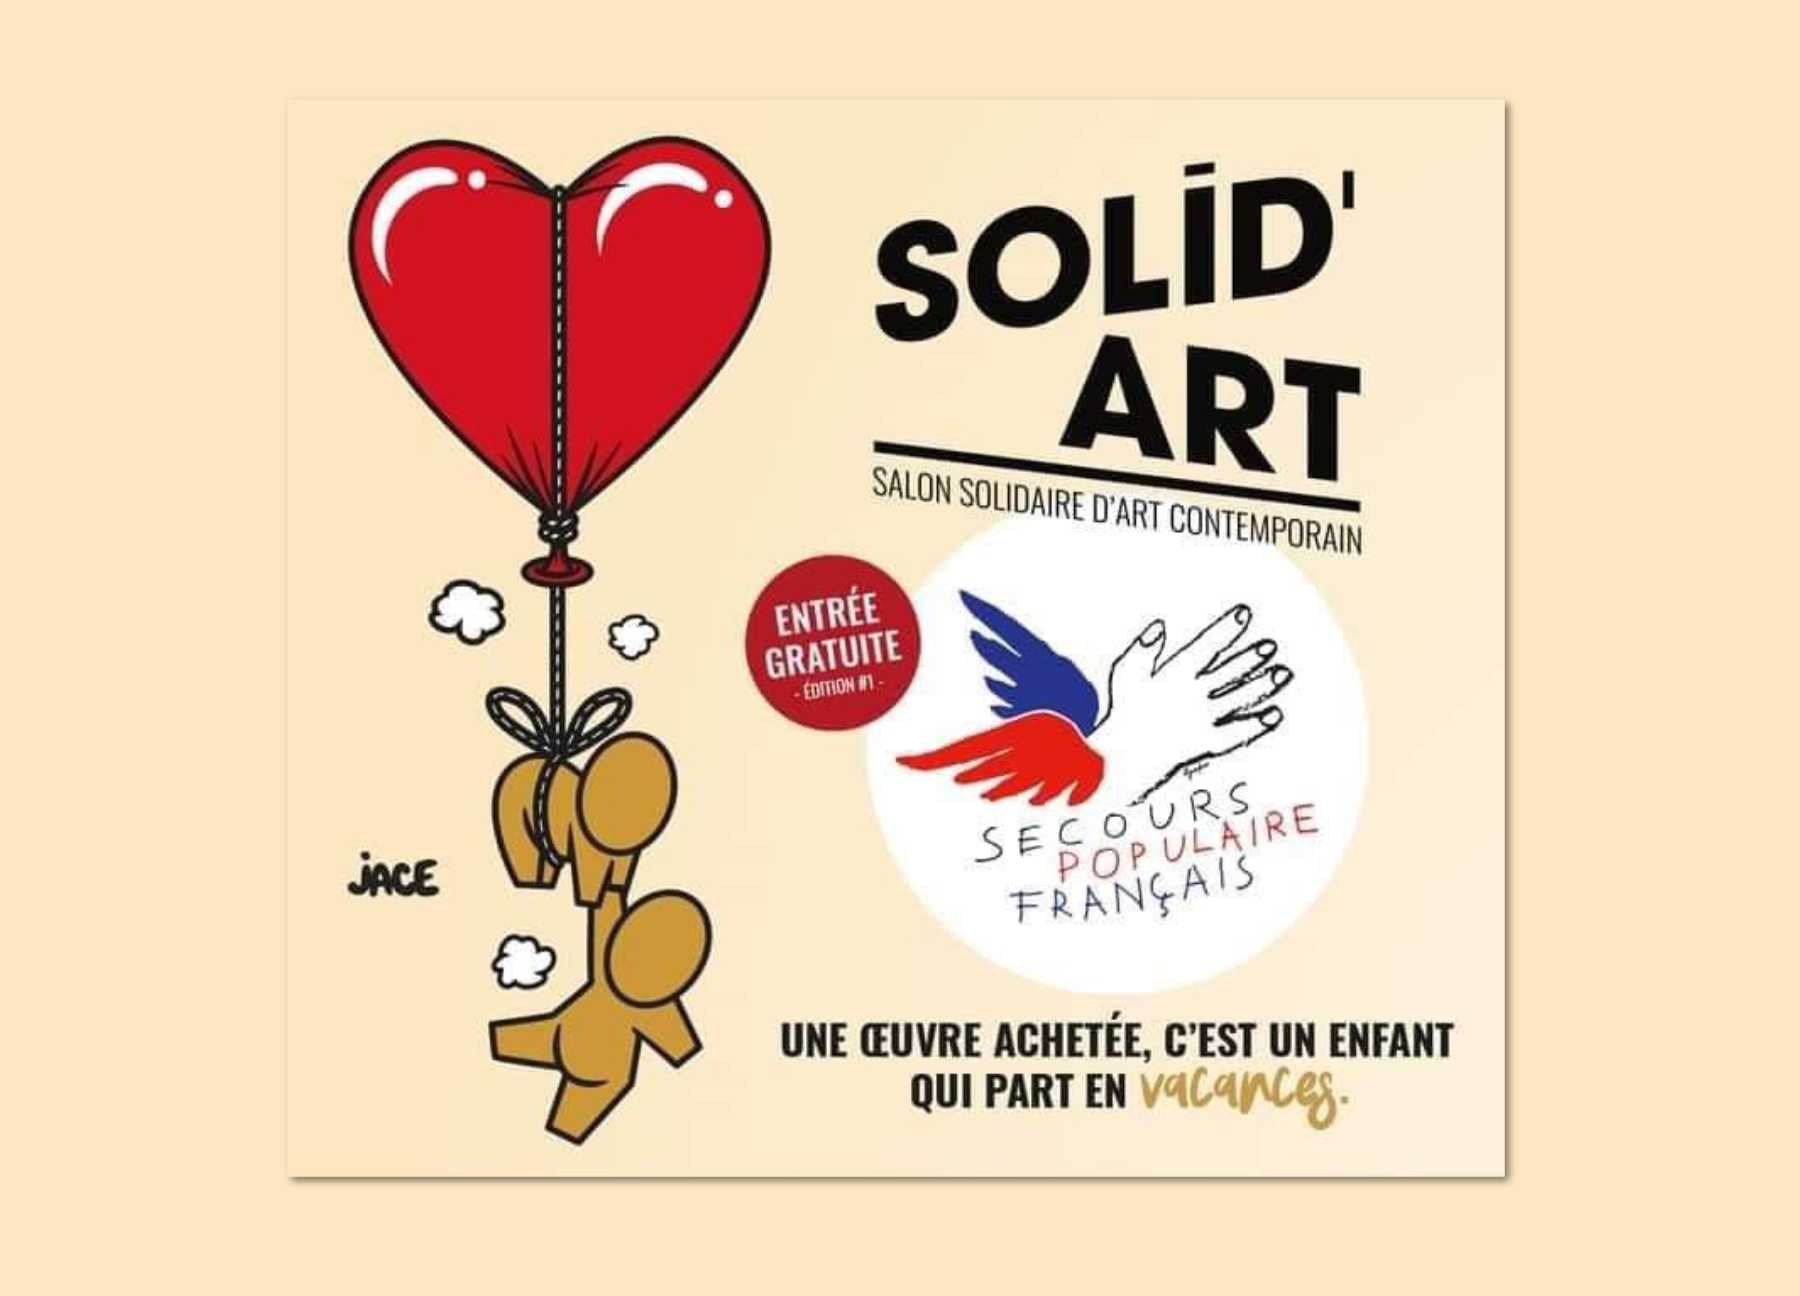 Solid'Art, Paris: Art In Action